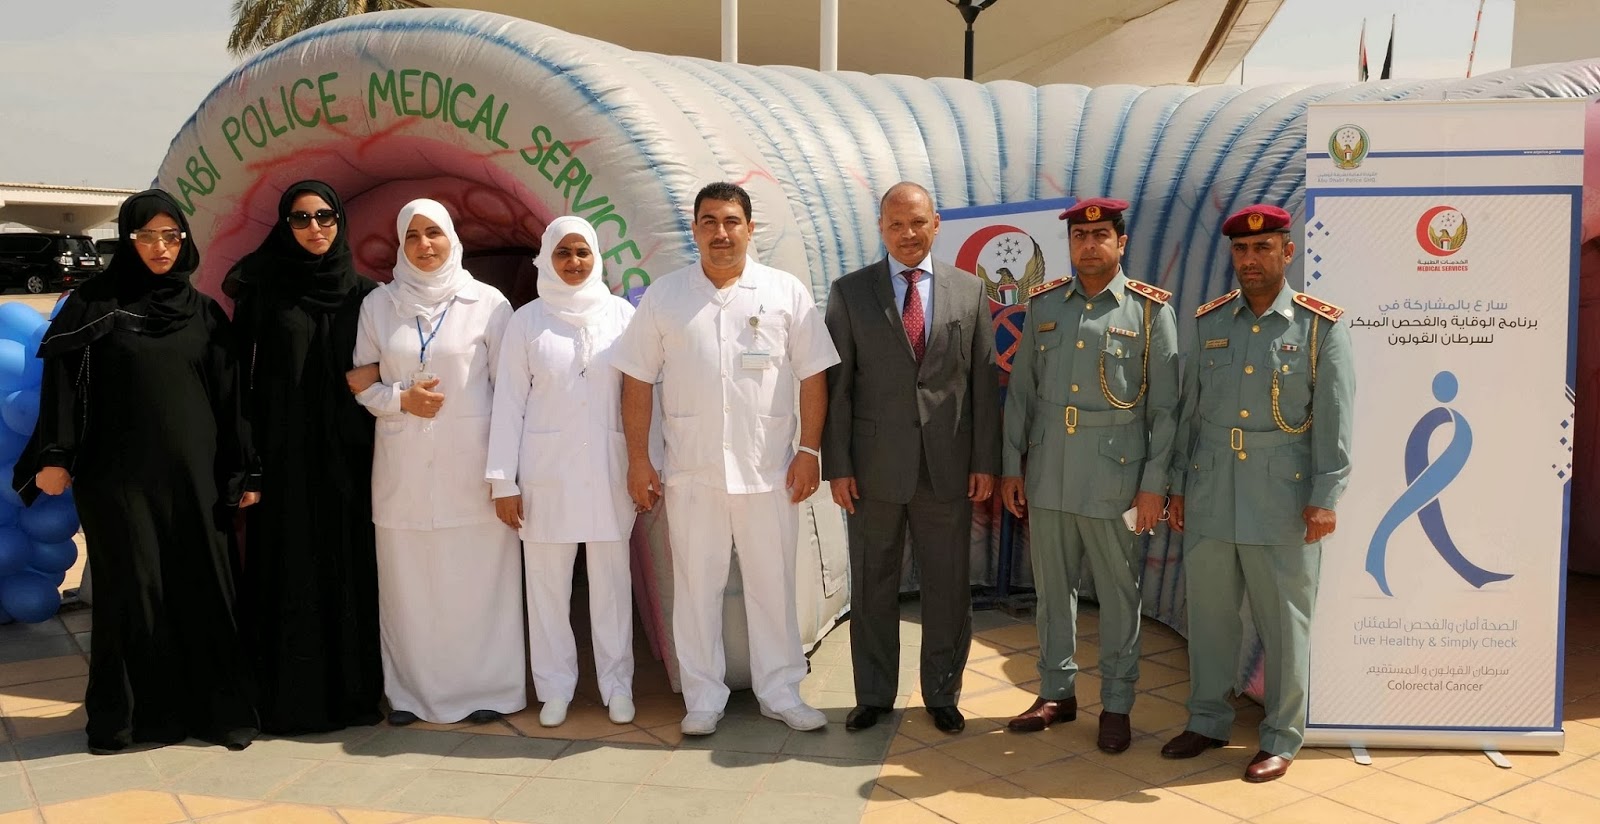 Dubai News Today: شرطة أبوظبي تنظم حملة طبية لتوعية الجمهور بسرطان القولون